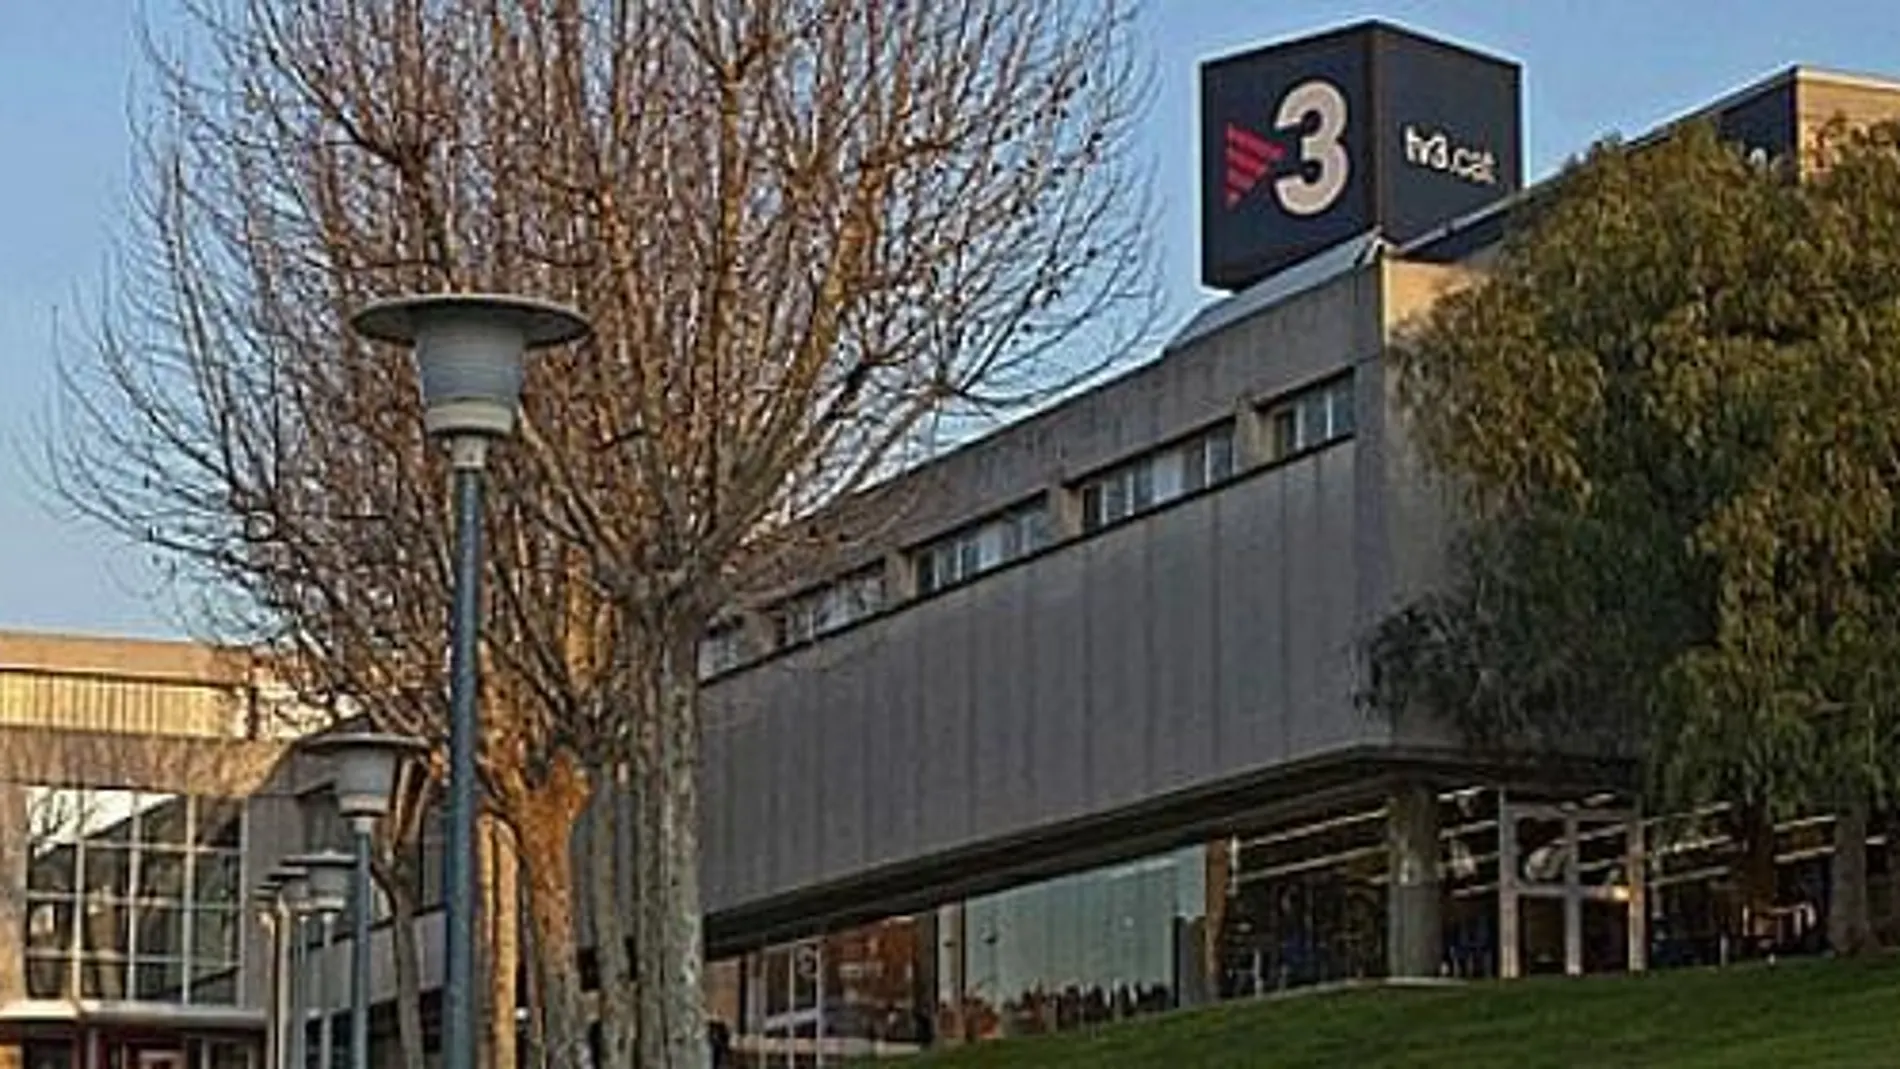 El juez investiga si la productora Triacom infló el precio de los programas a TV3 para financiar a Convergencia